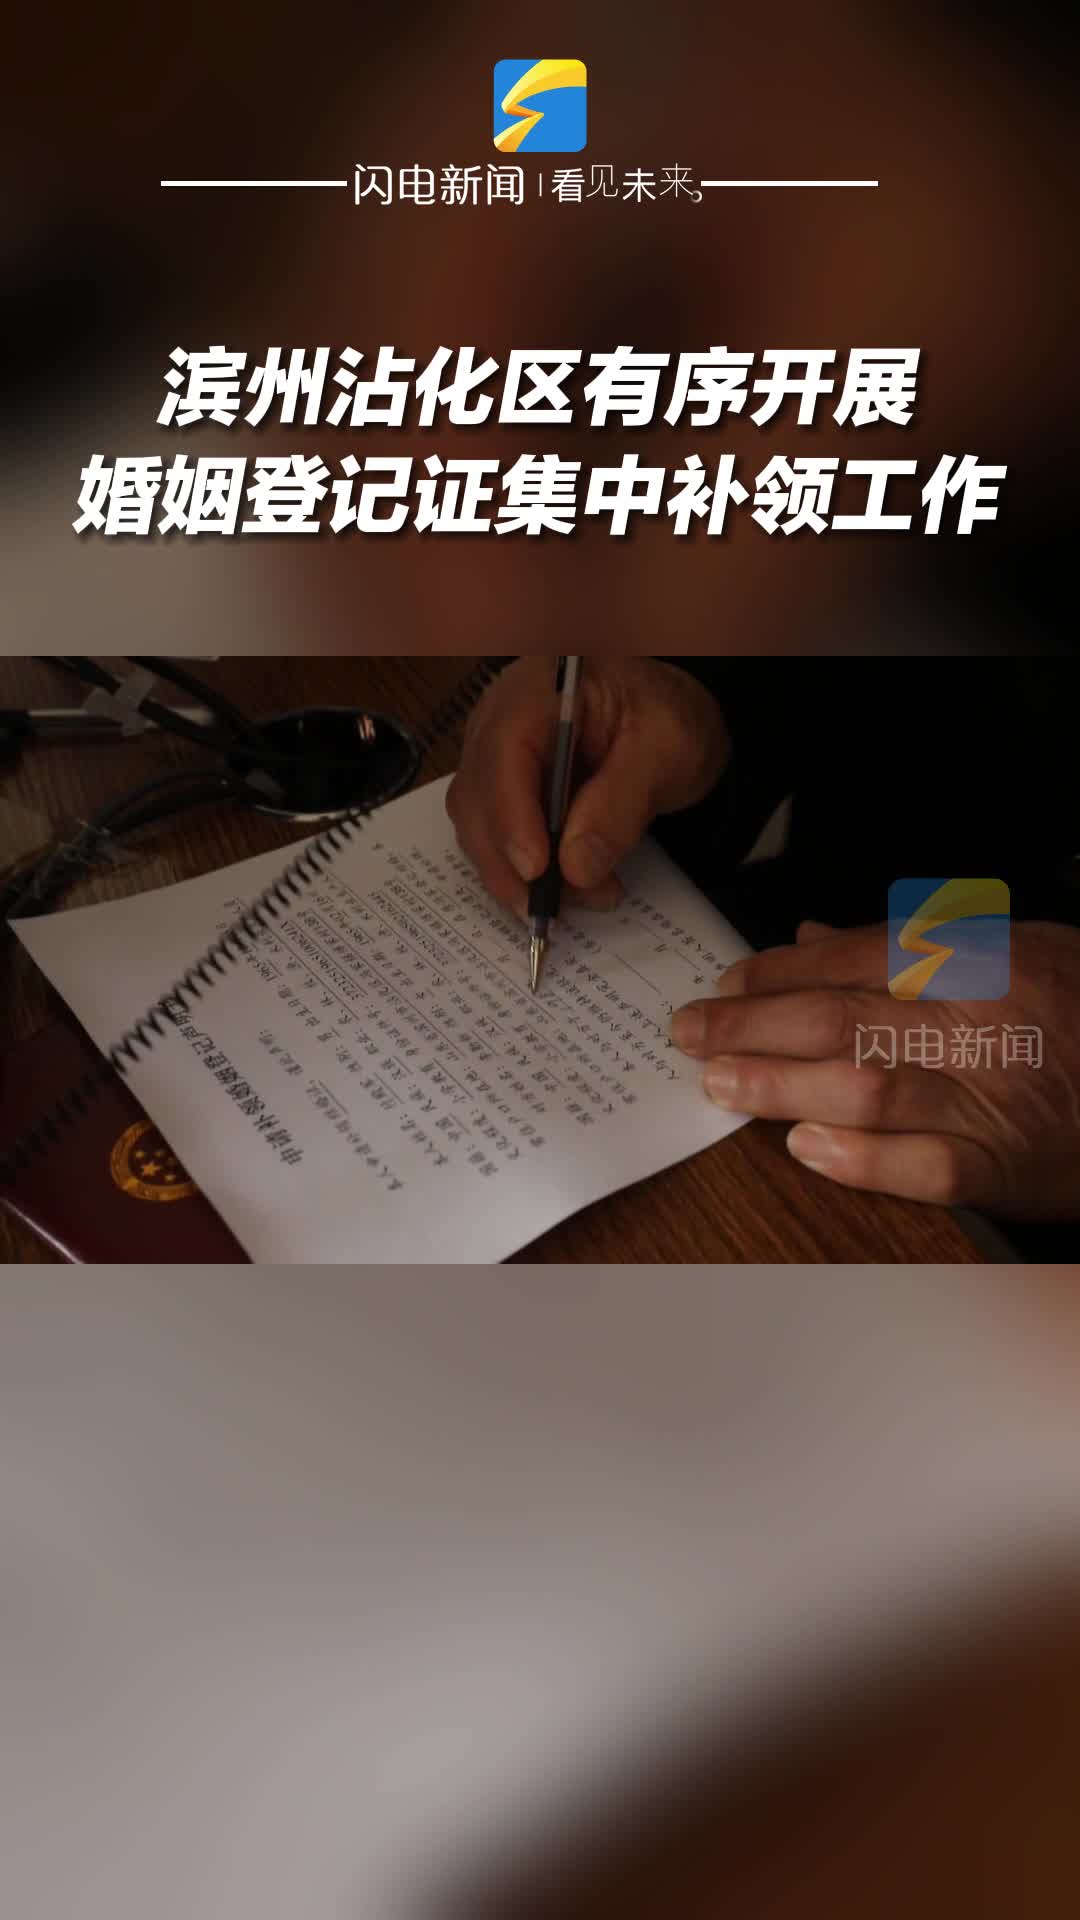 滨州沾化区有序开展婚姻登记证集中补领工作